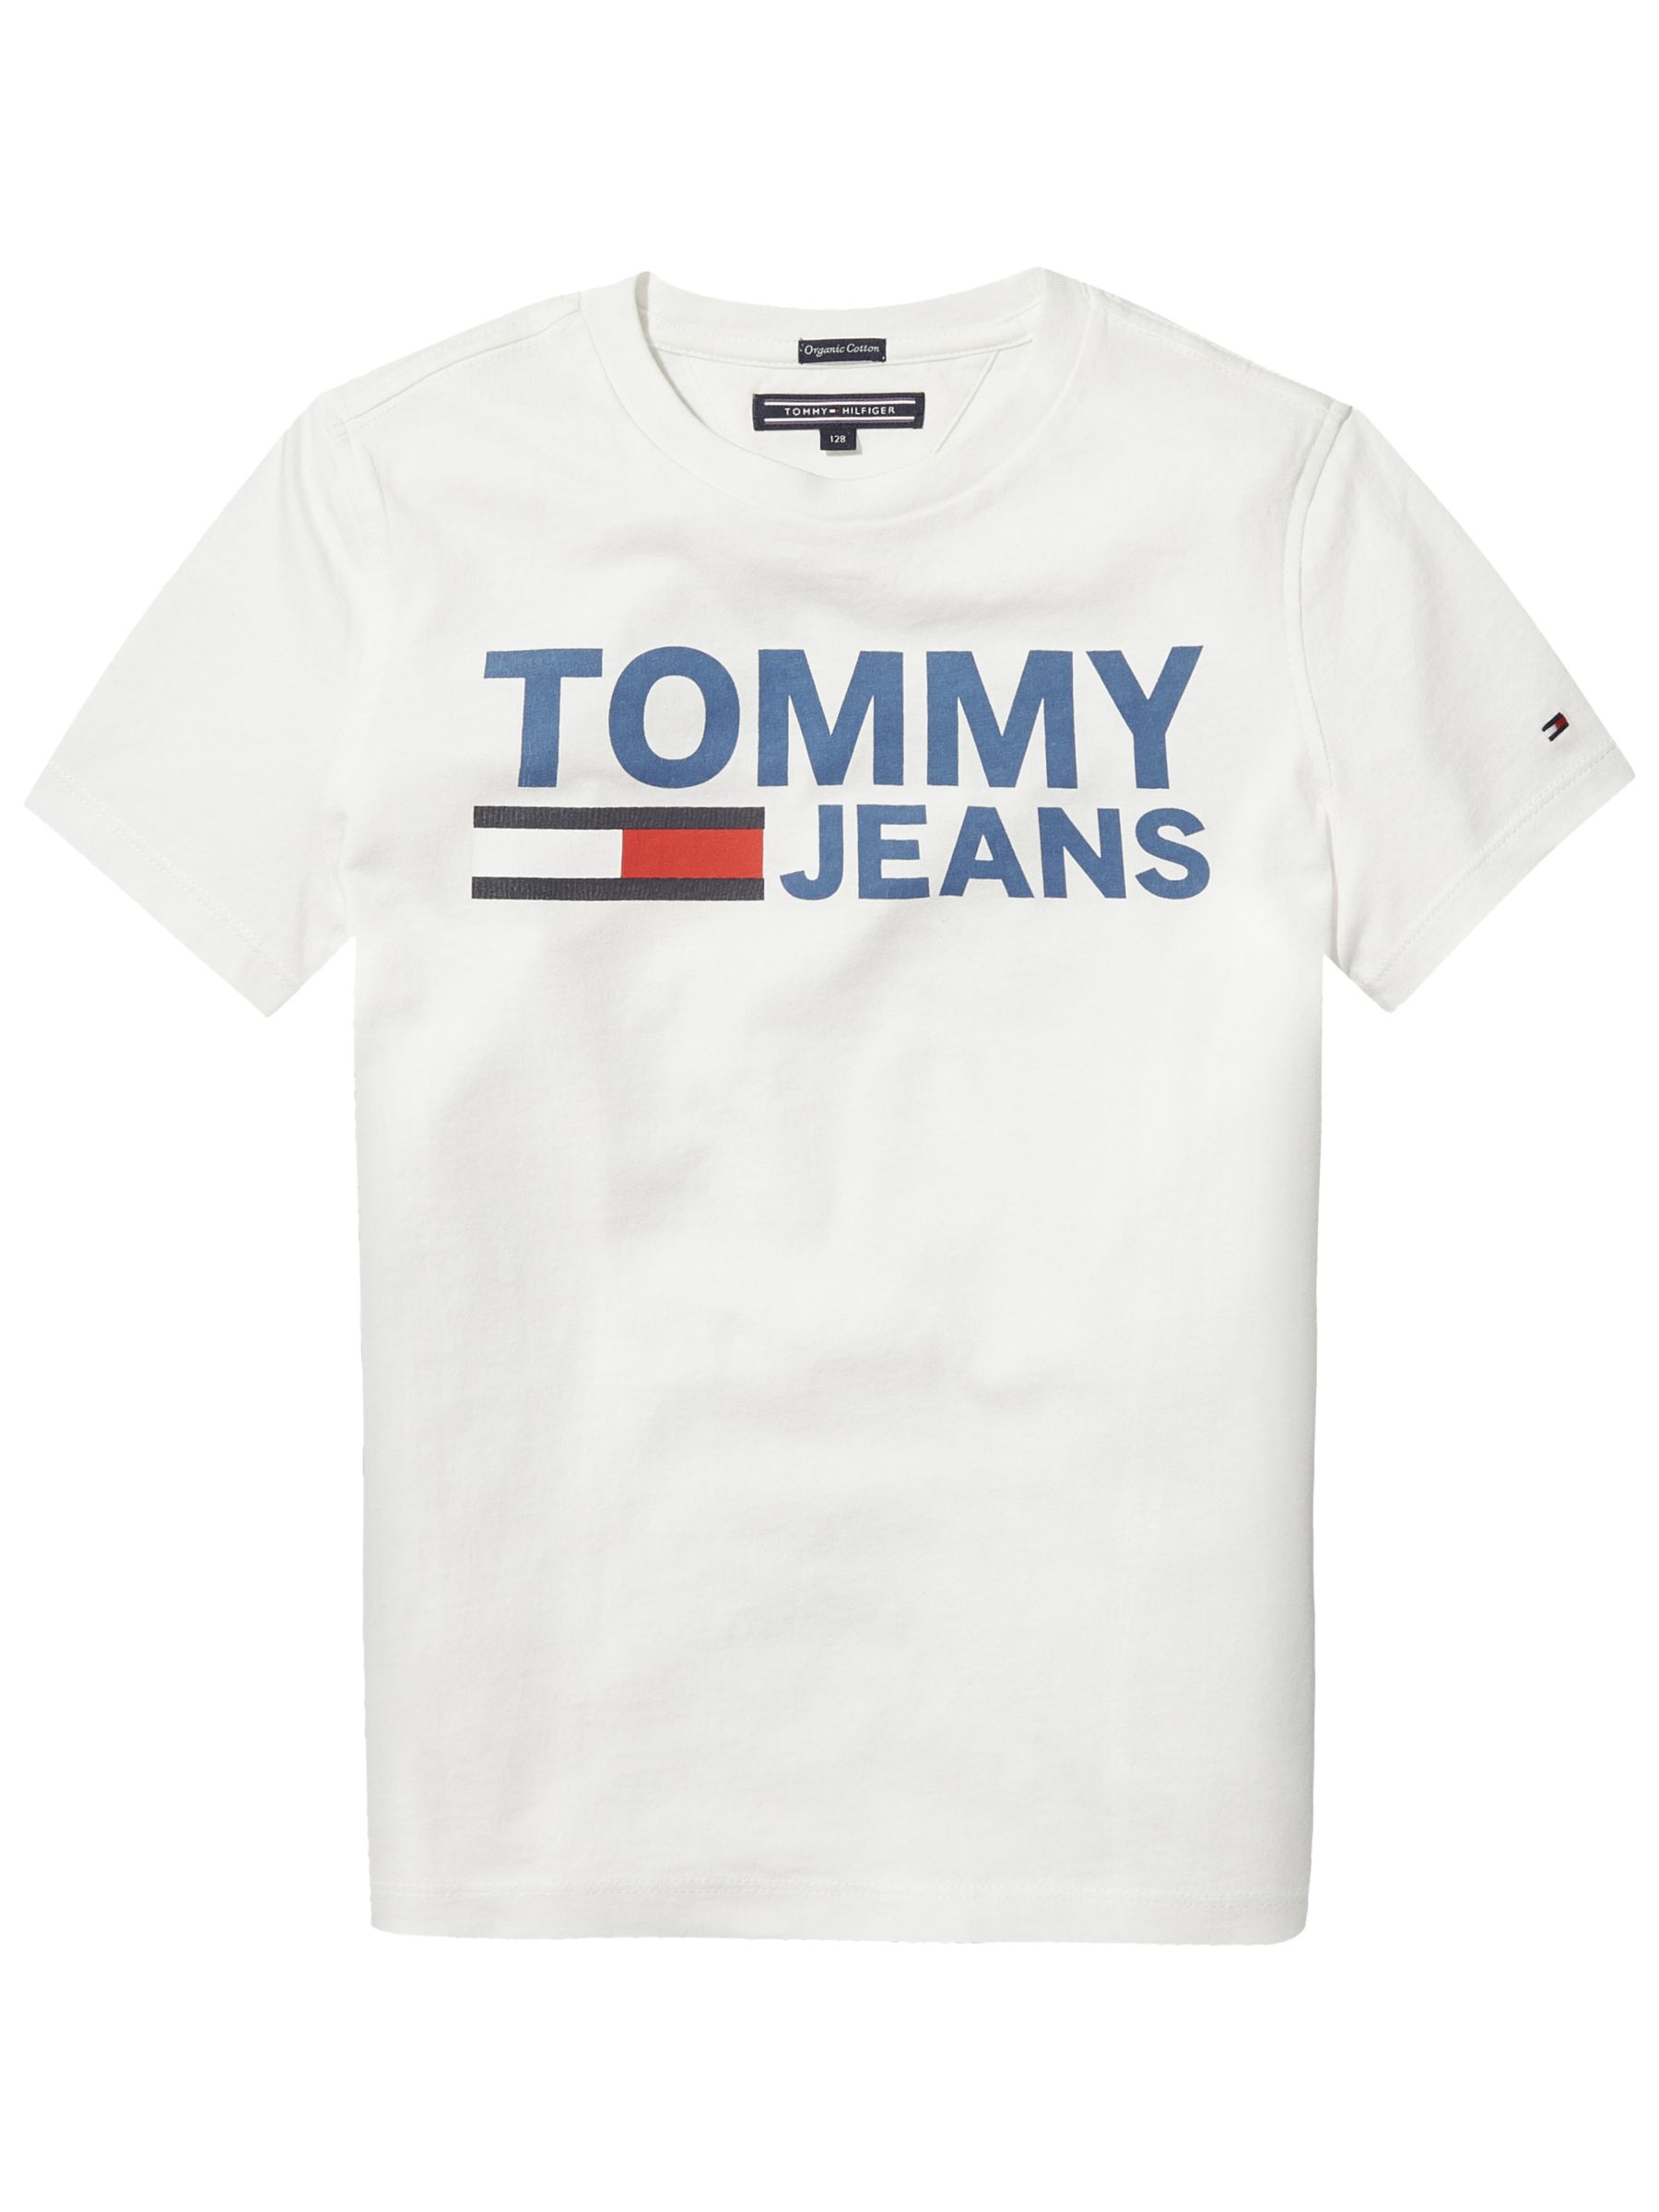 tommy hilfiger tshirt boys